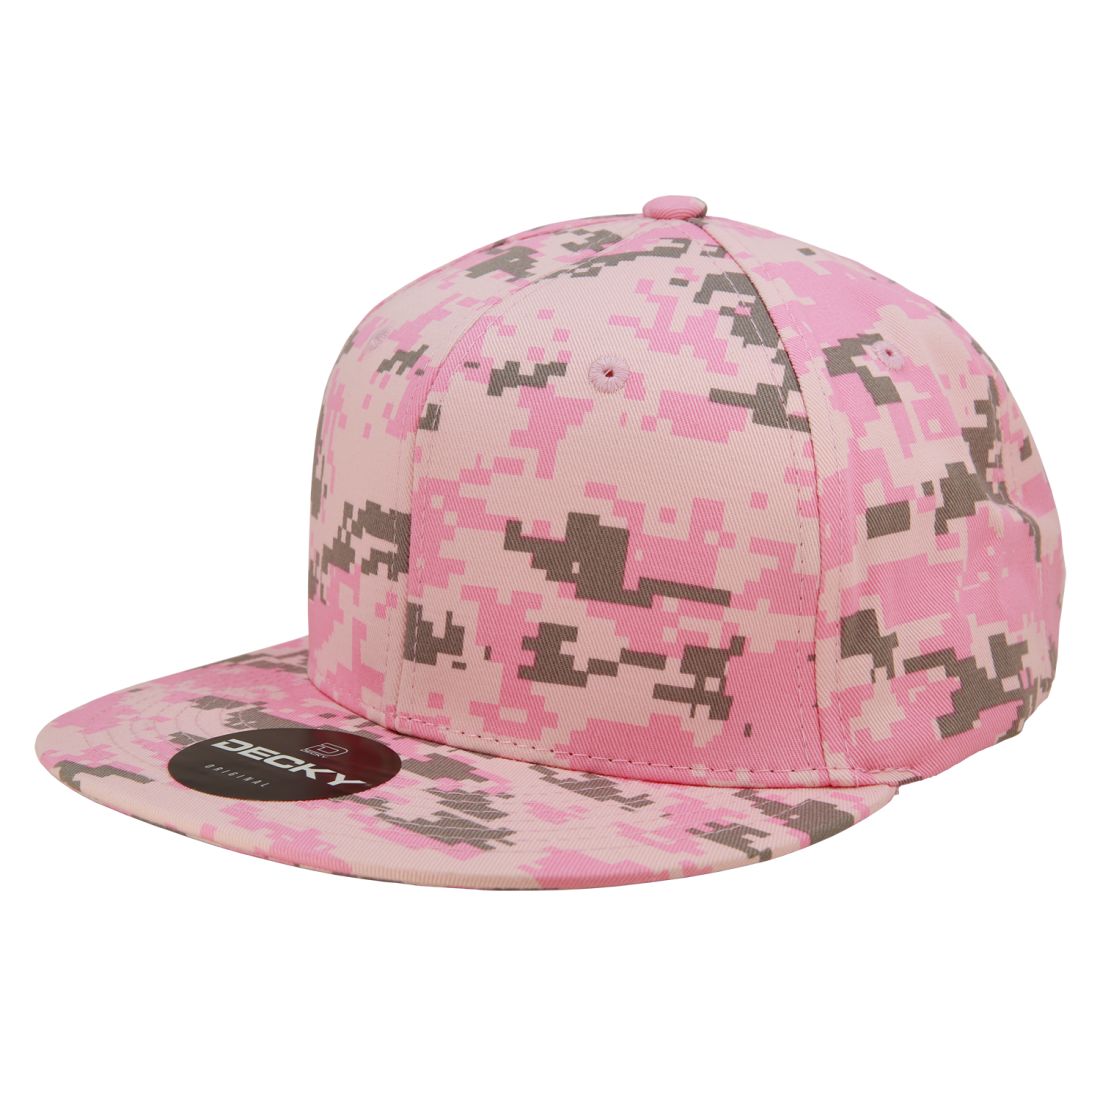 Pink Digital color variant